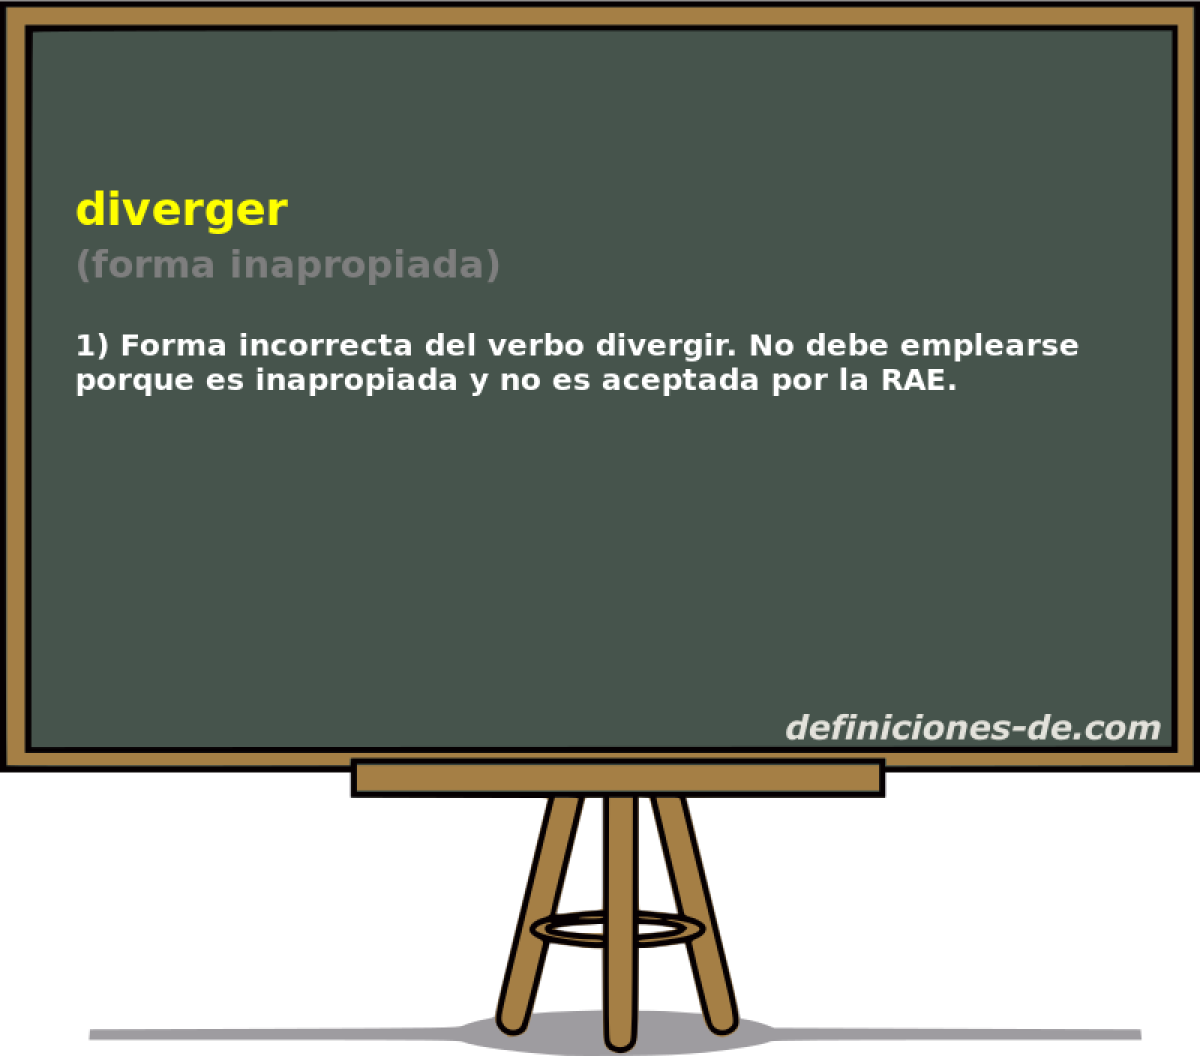 diverger (forma inapropiada)